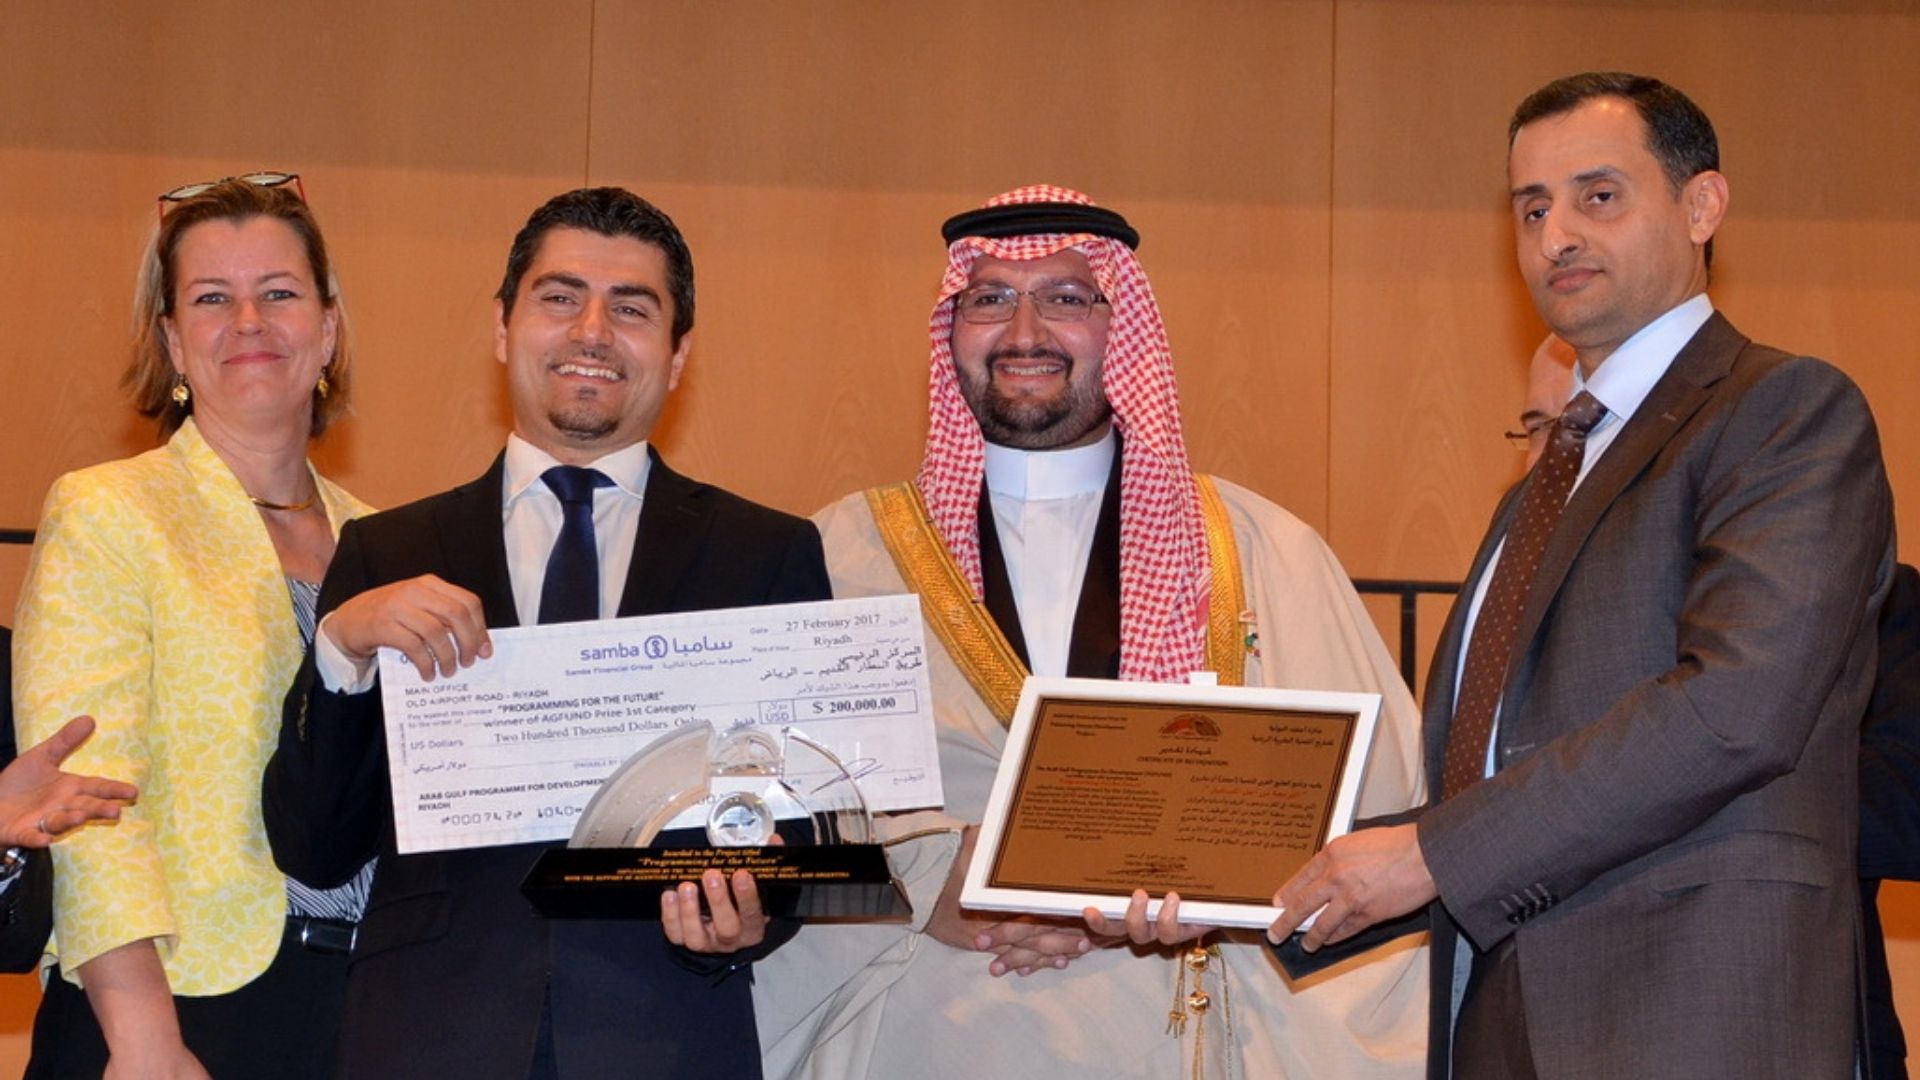 المشروع الفائز الأول بجائزة الأمير طلال الدولية للتنمية البشرية 2015